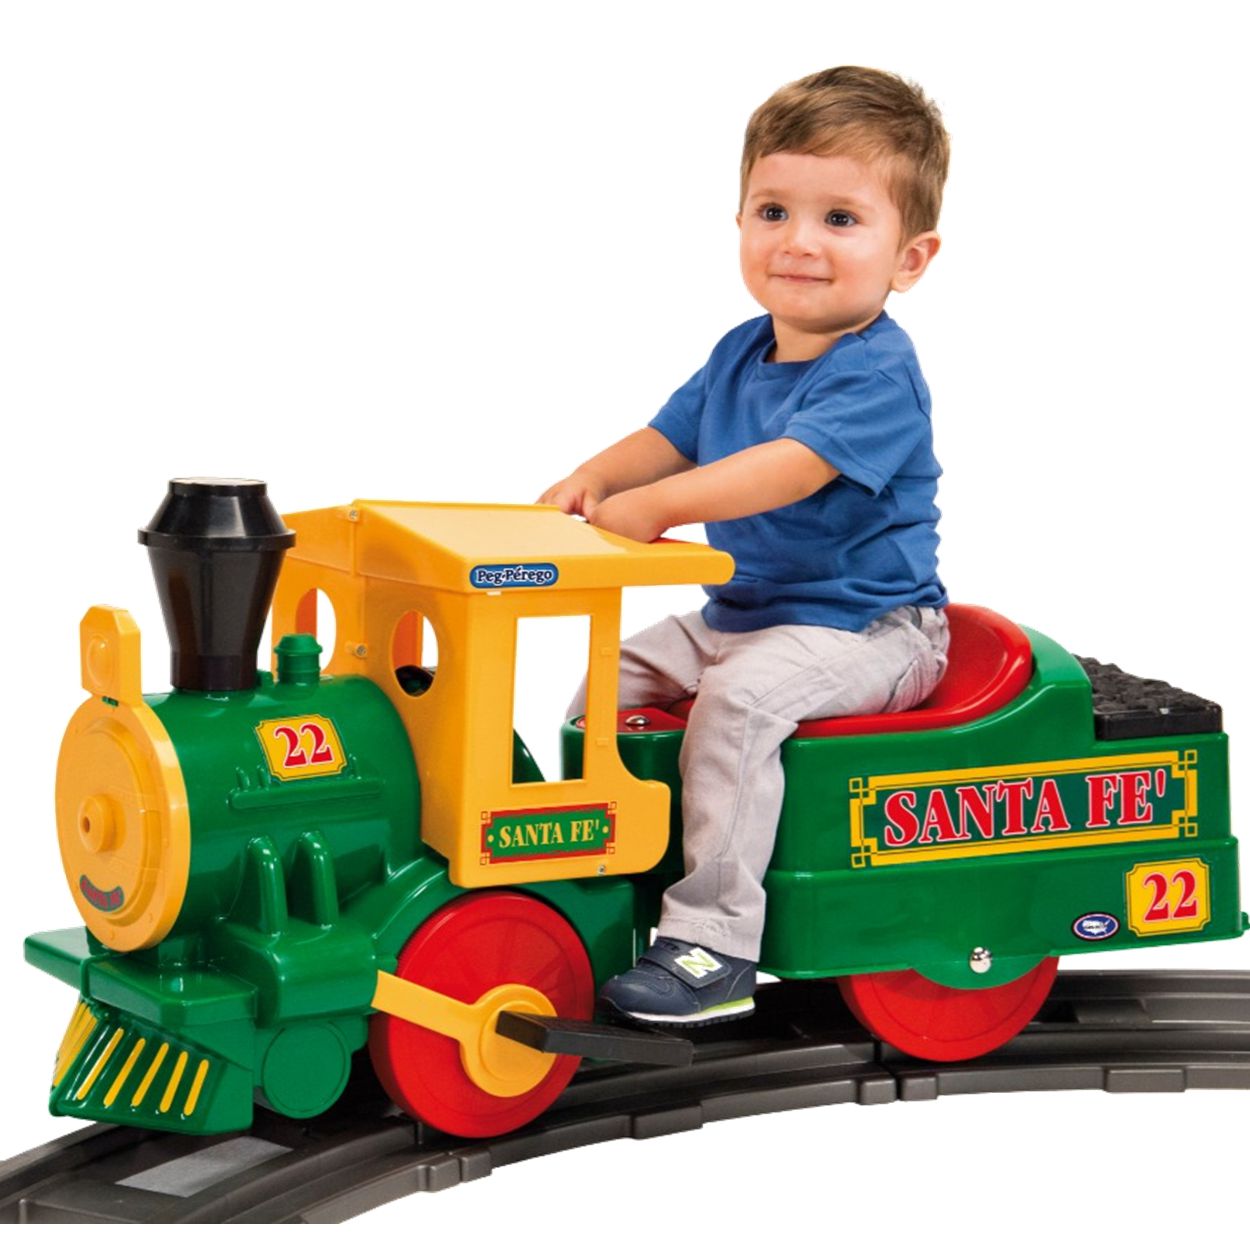 Trem De Brinquedo Com Trilho A Pilha Locomotiva Infantil